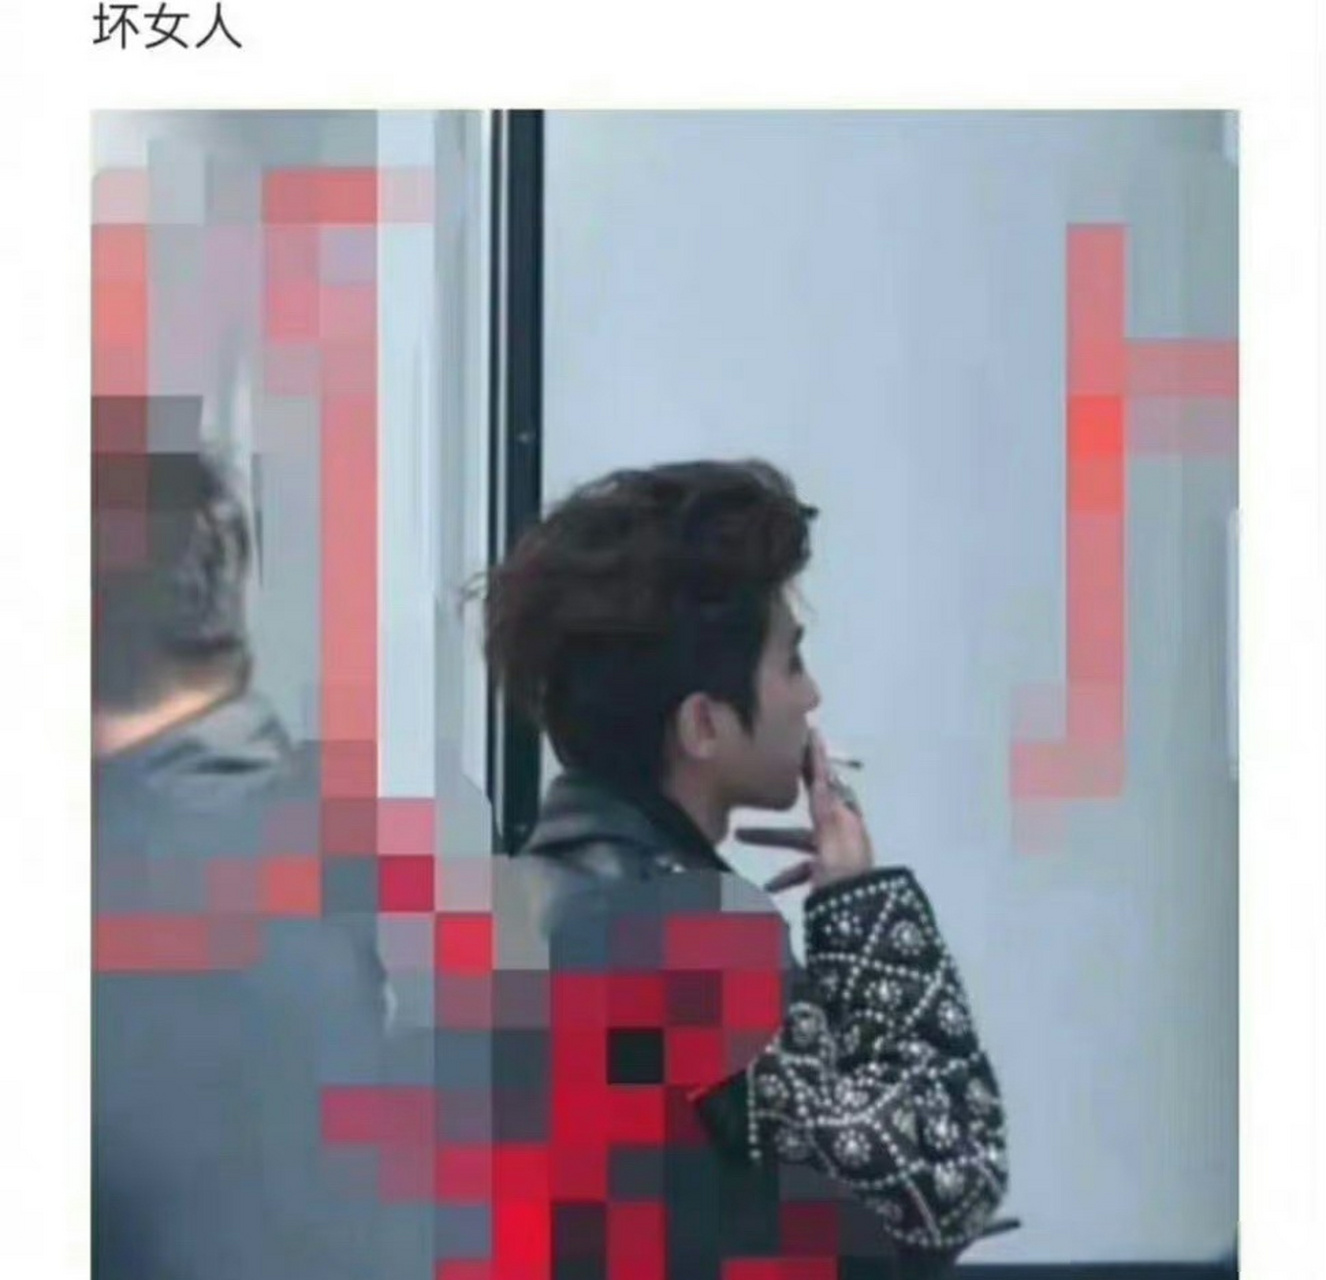 蔡徐坤抽烟吸图片图片